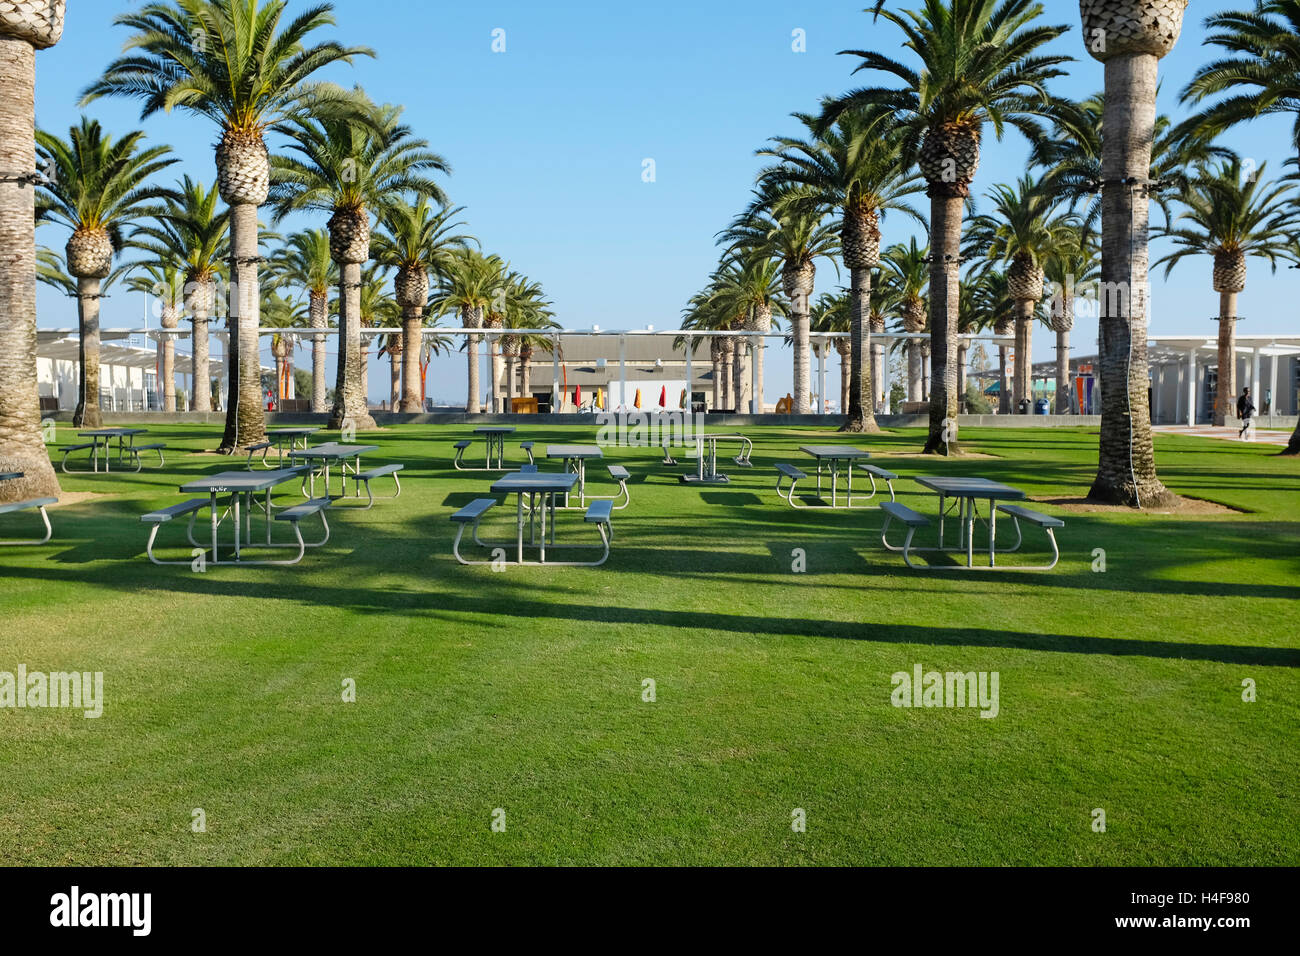 IRVINE, CA - le 14 octobre 2016 : Le Grand Parc Palm Court et Arts Building. Le Palm Court sert de campus culturel Parcs. Banque D'Images